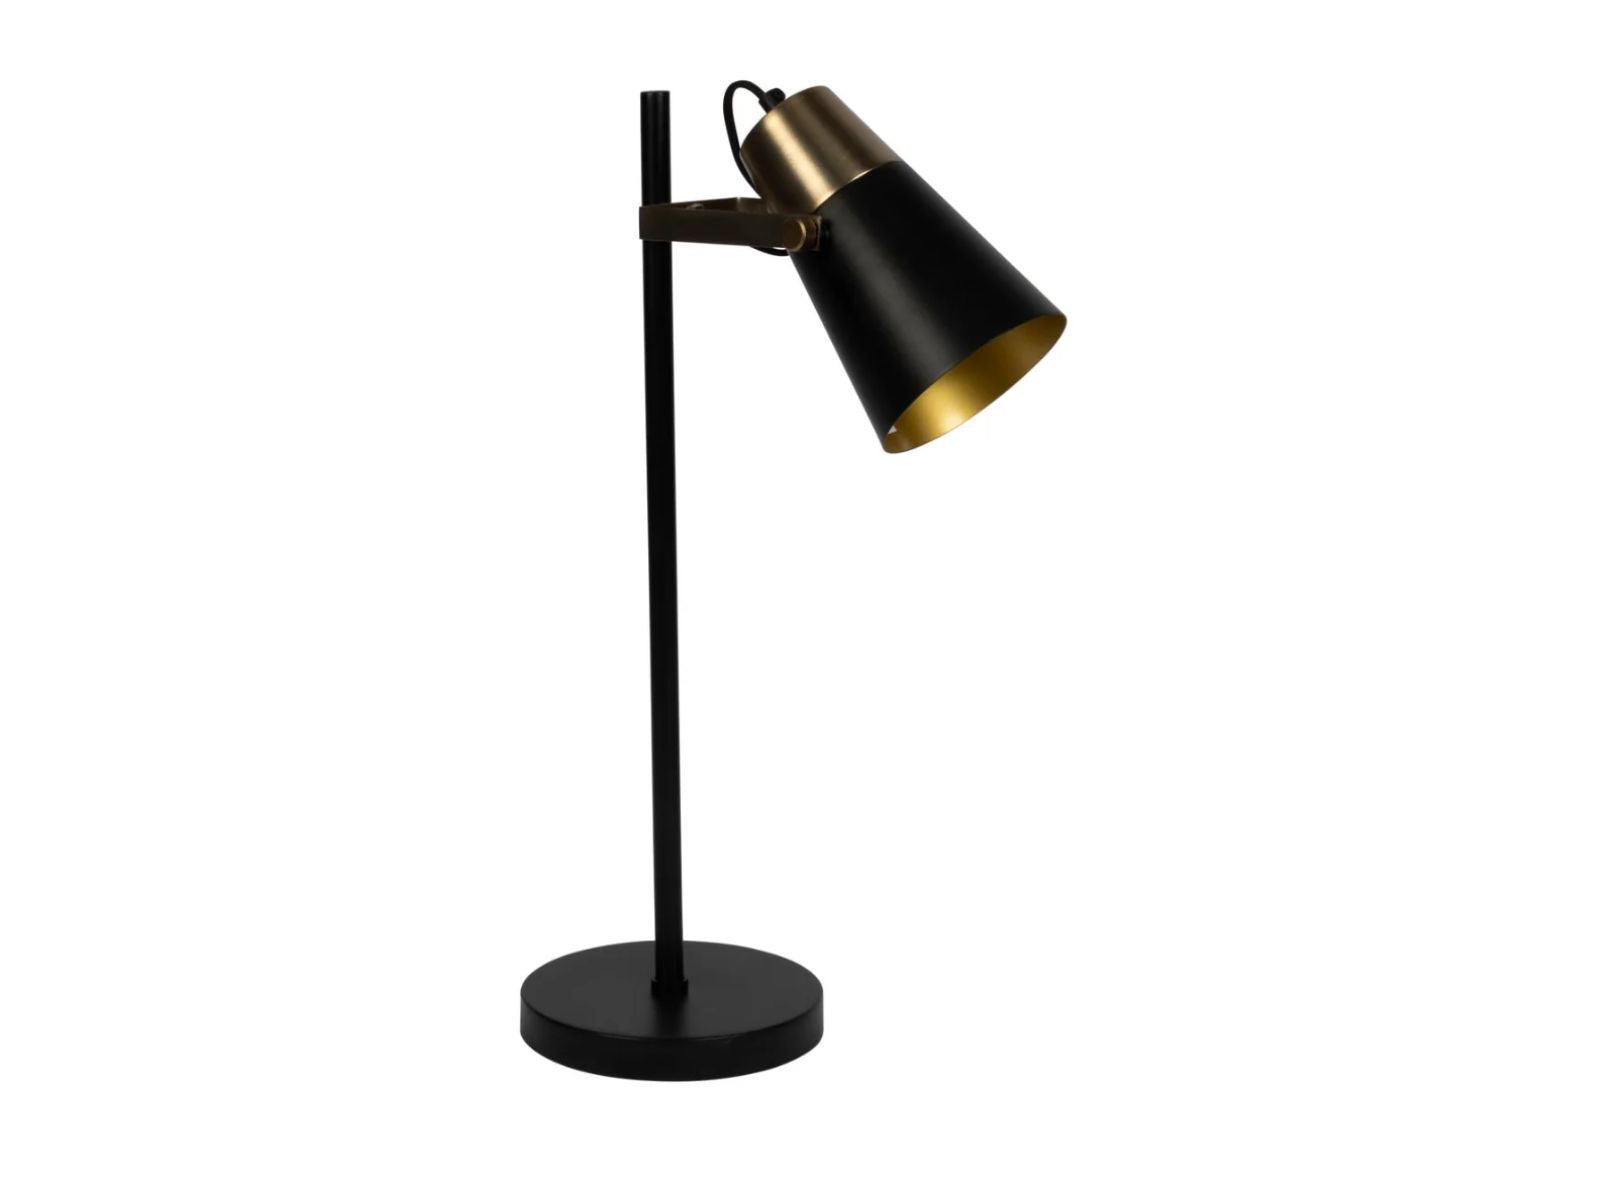 Mystique Desk Lamp in Nightshade